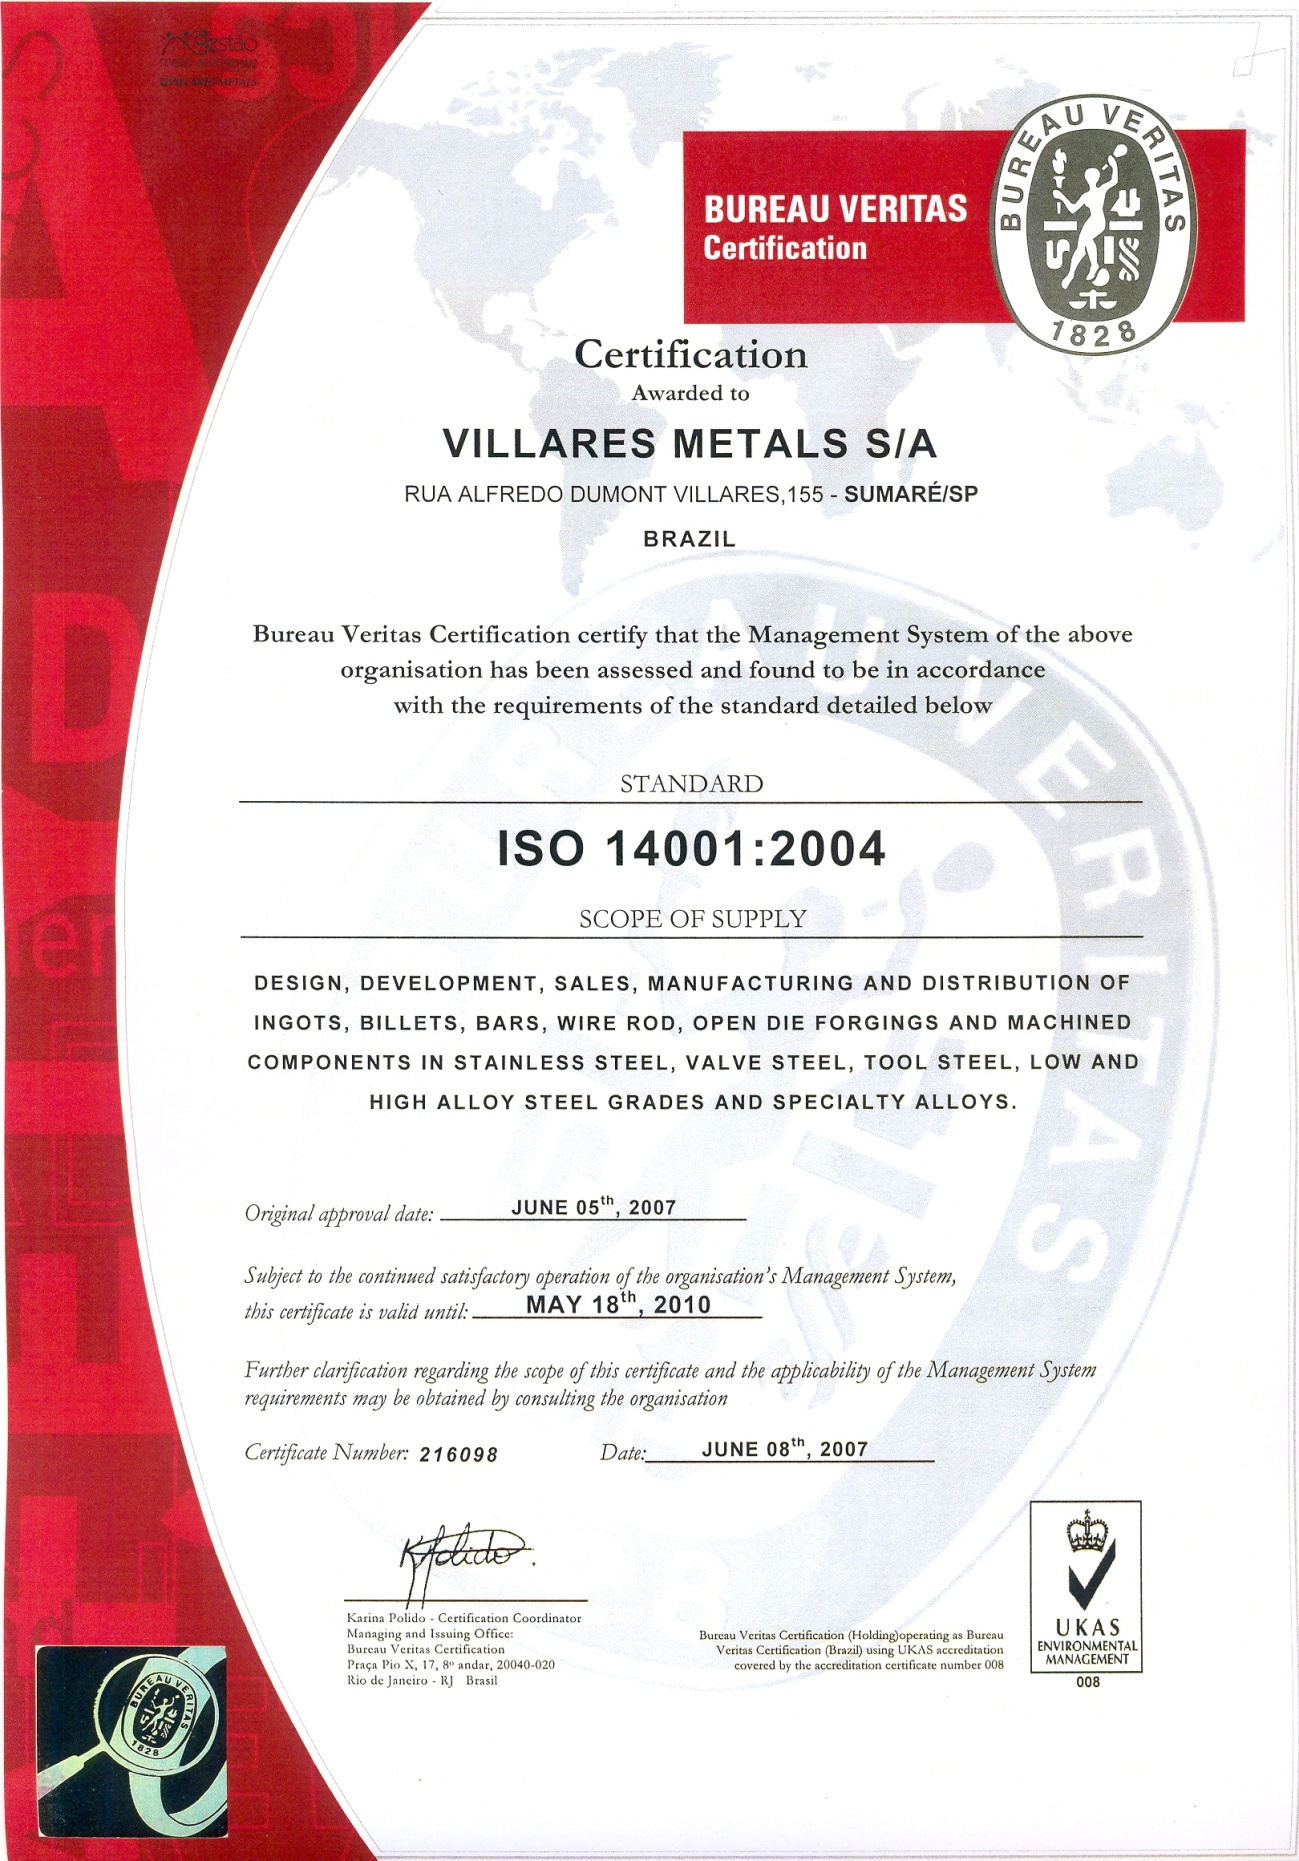 Figura 6 - Exemplo de documento emitido pelo Bureau Veritas atestando a conformidade com a norma ISO 14001 para uma empresa.